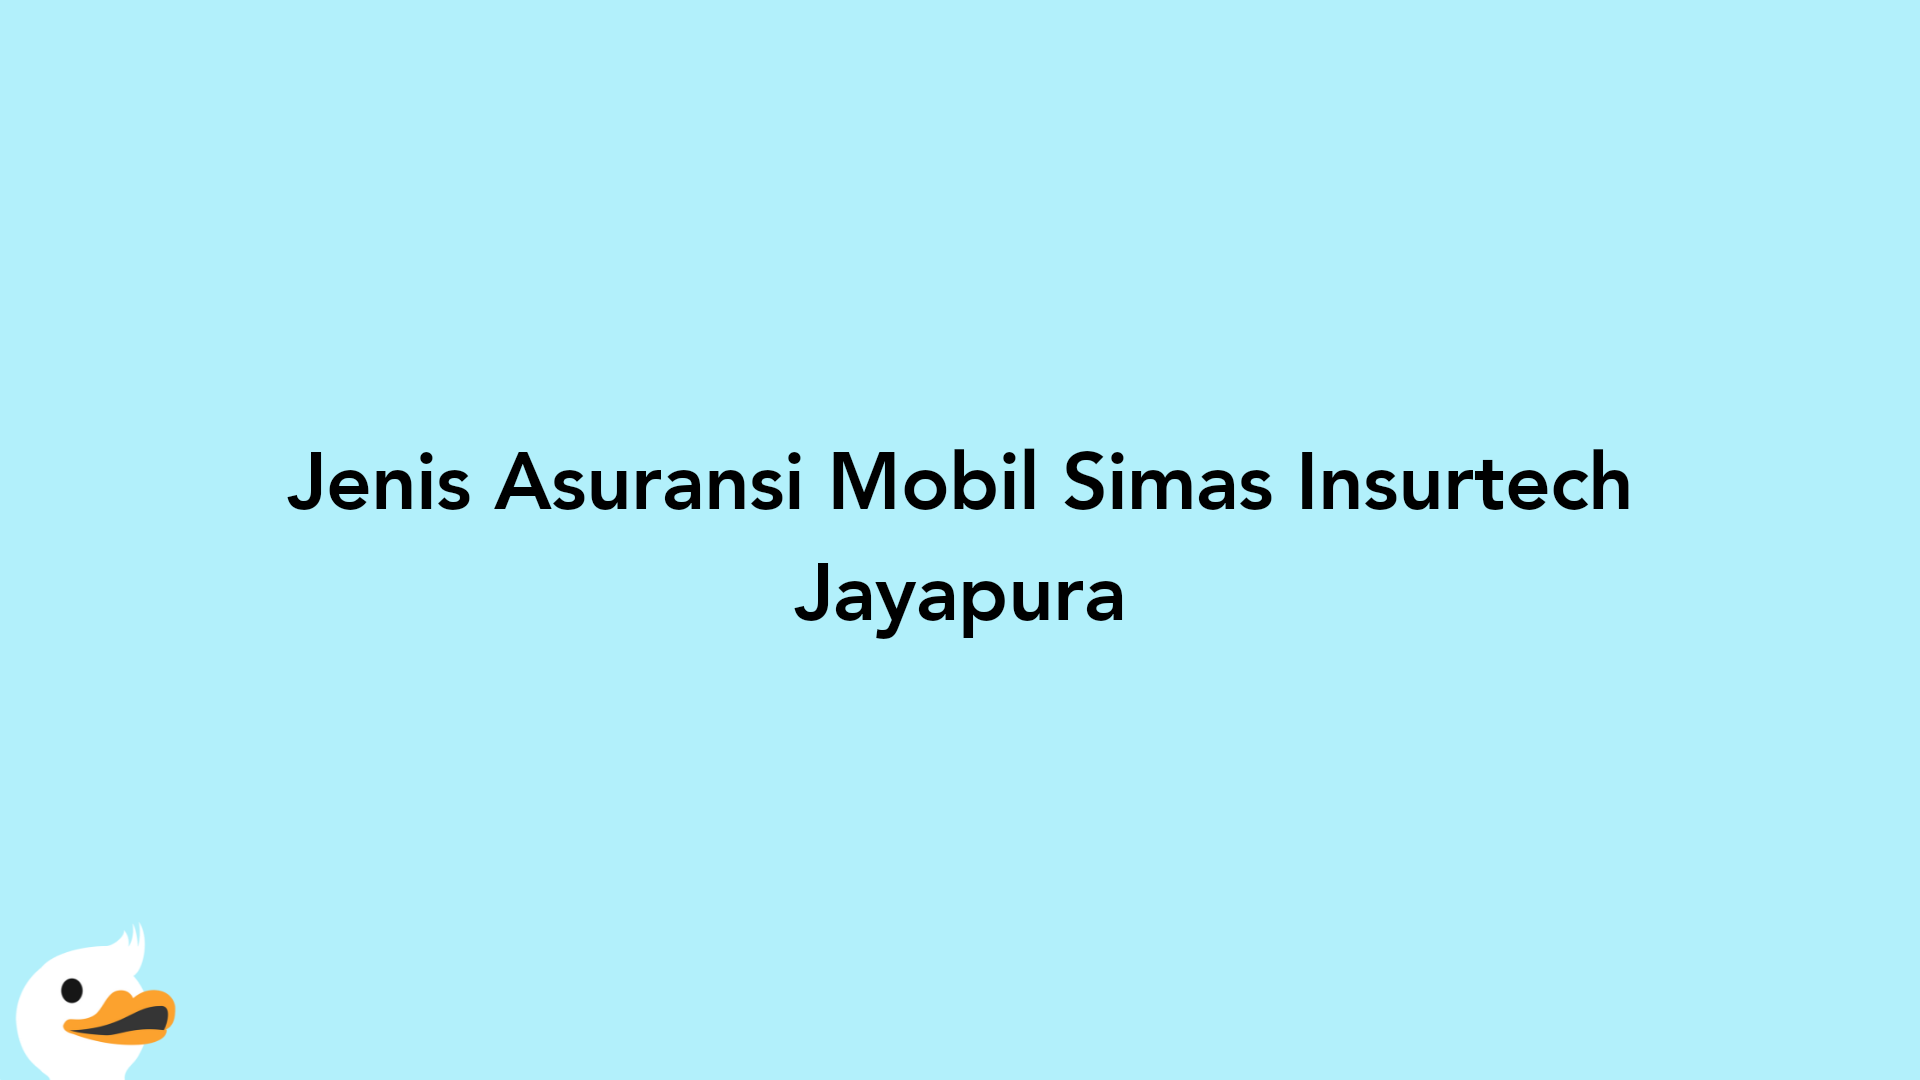 Jenis Asuransi Mobil Simas Insurtech Jayapura